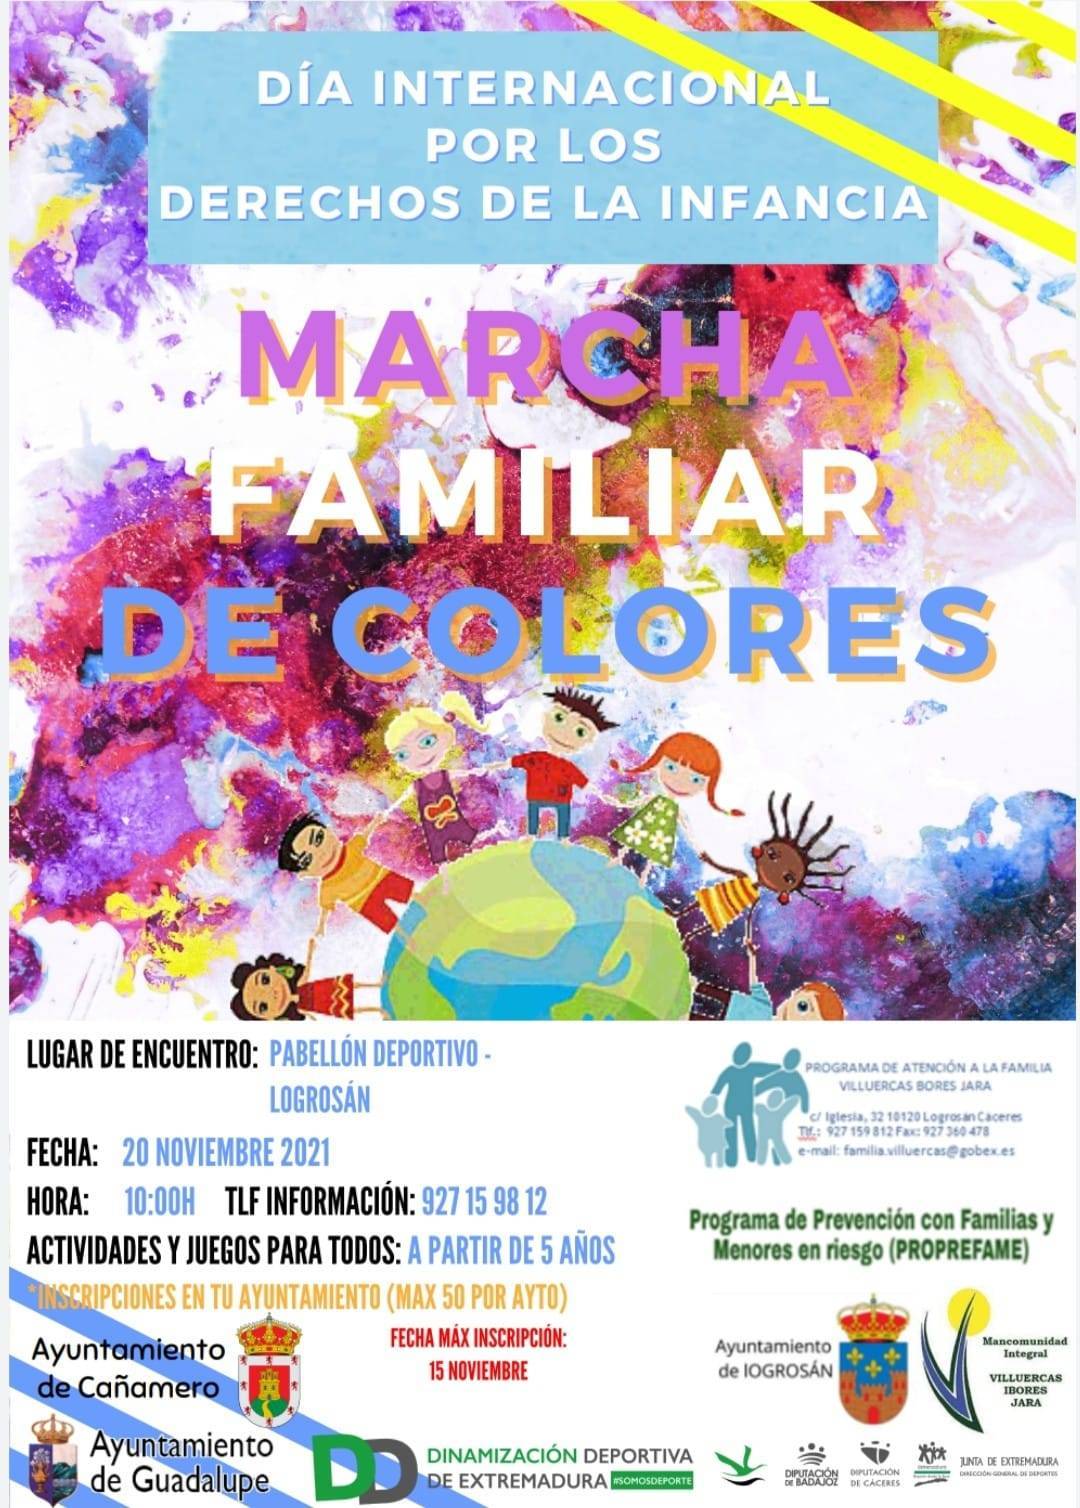 Marcha familiar de colores (2021) - Logrosán (Cáceres)